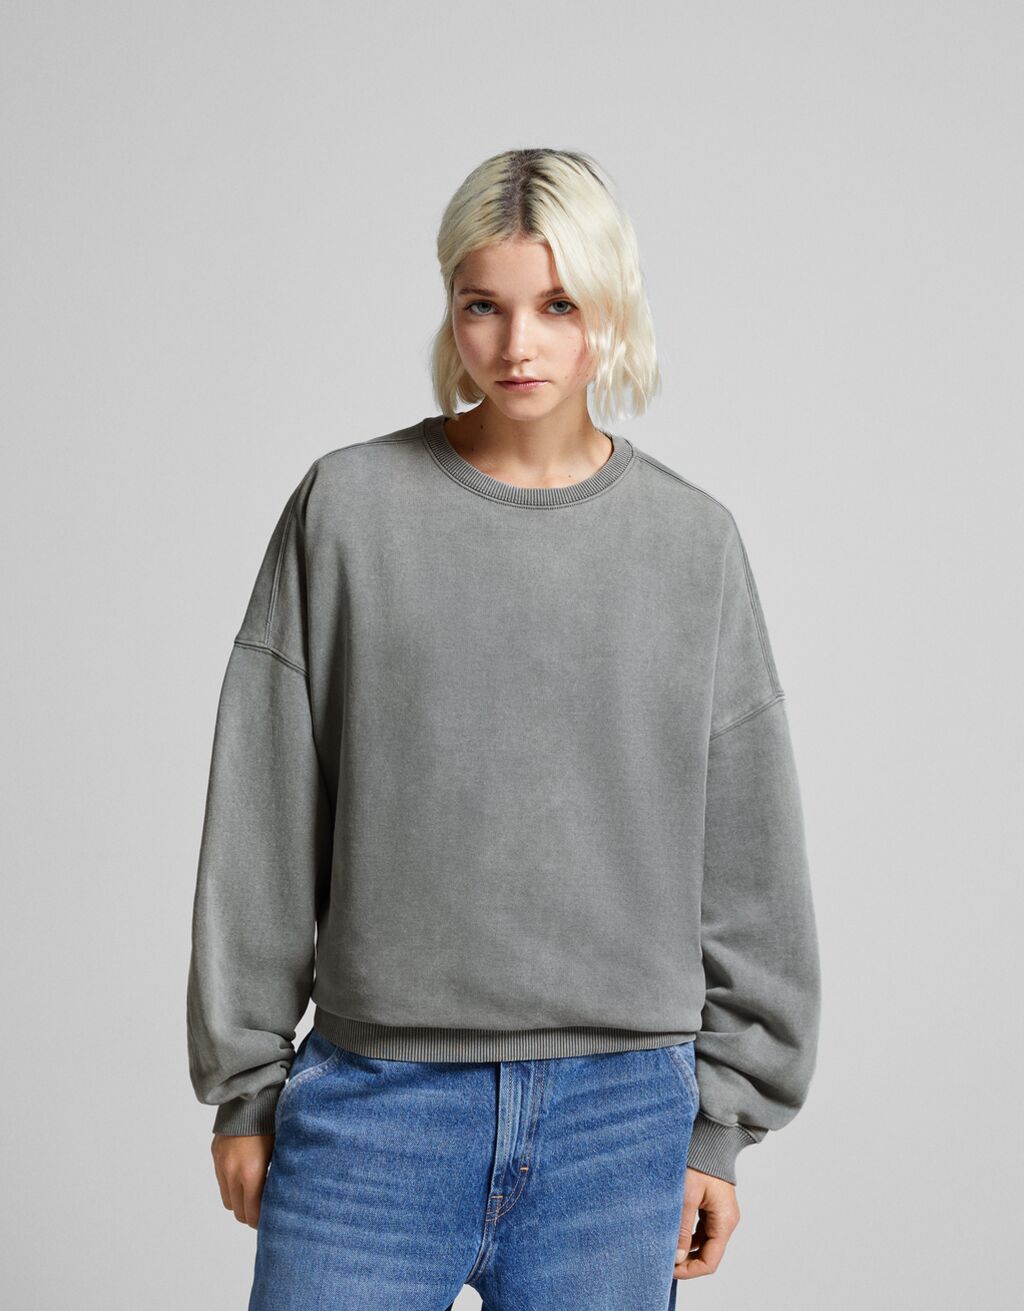 Oversized sweatshirt - Sweatshirts and hoodies - Women